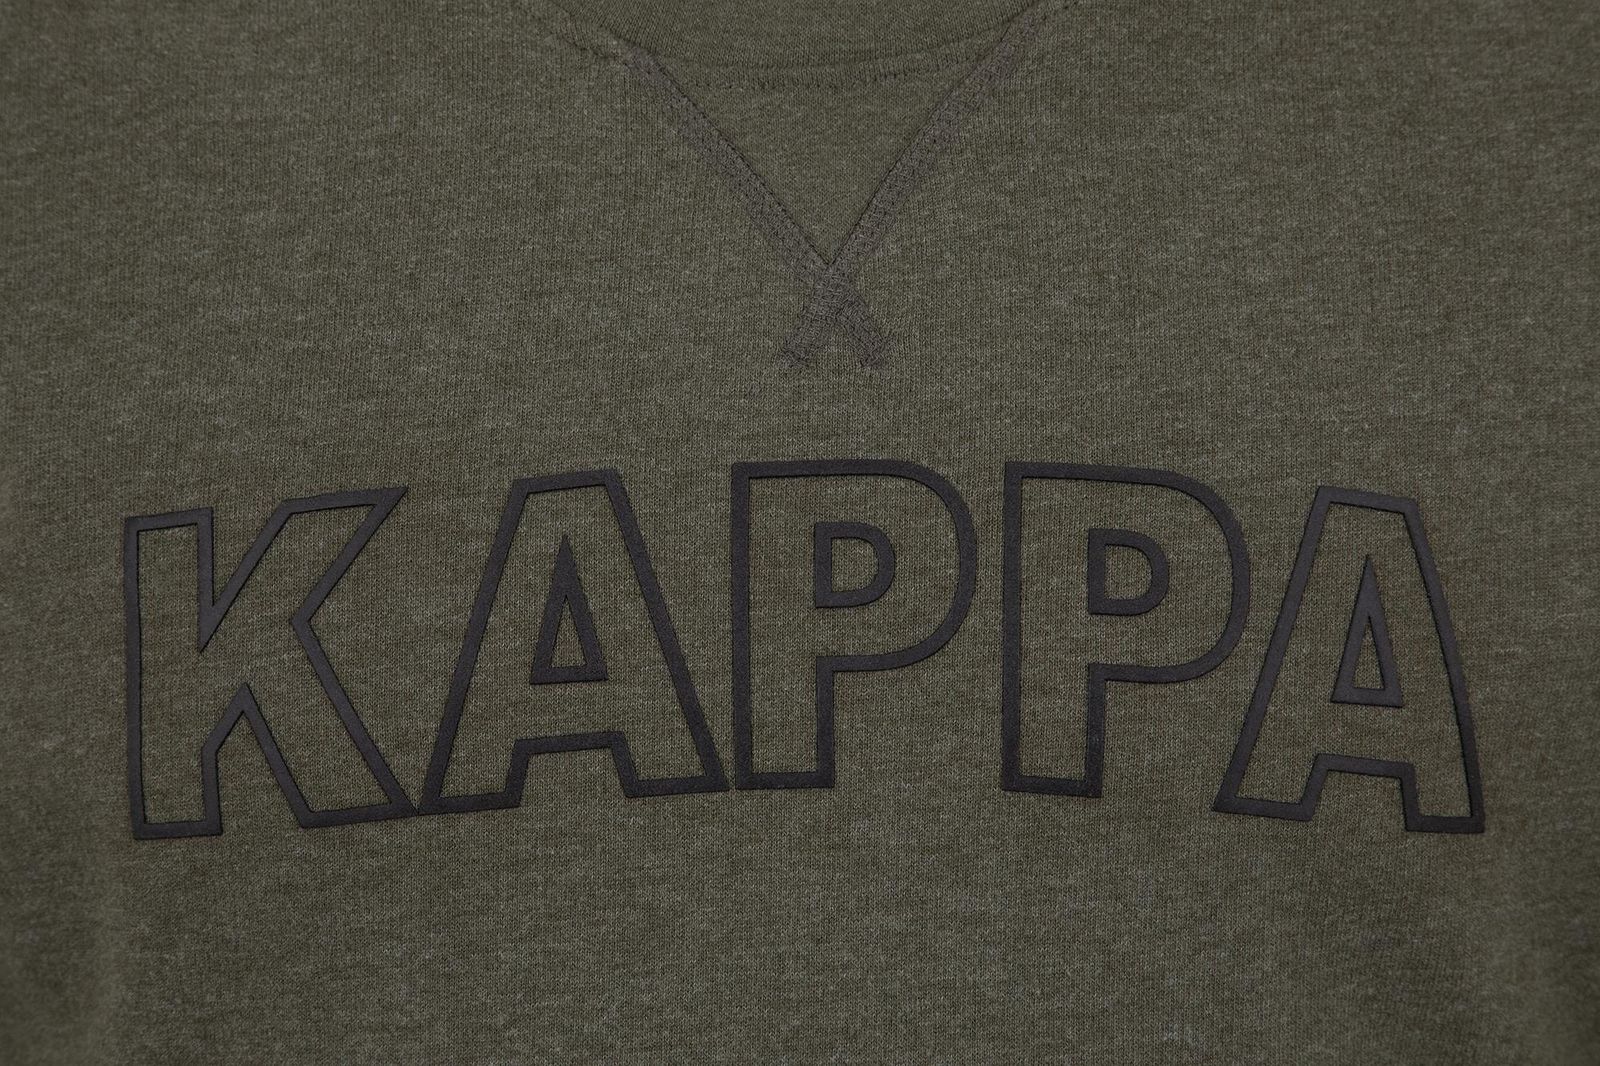   Kappa Men's Jumper, : -. 304IDL0-5U.  M (48)